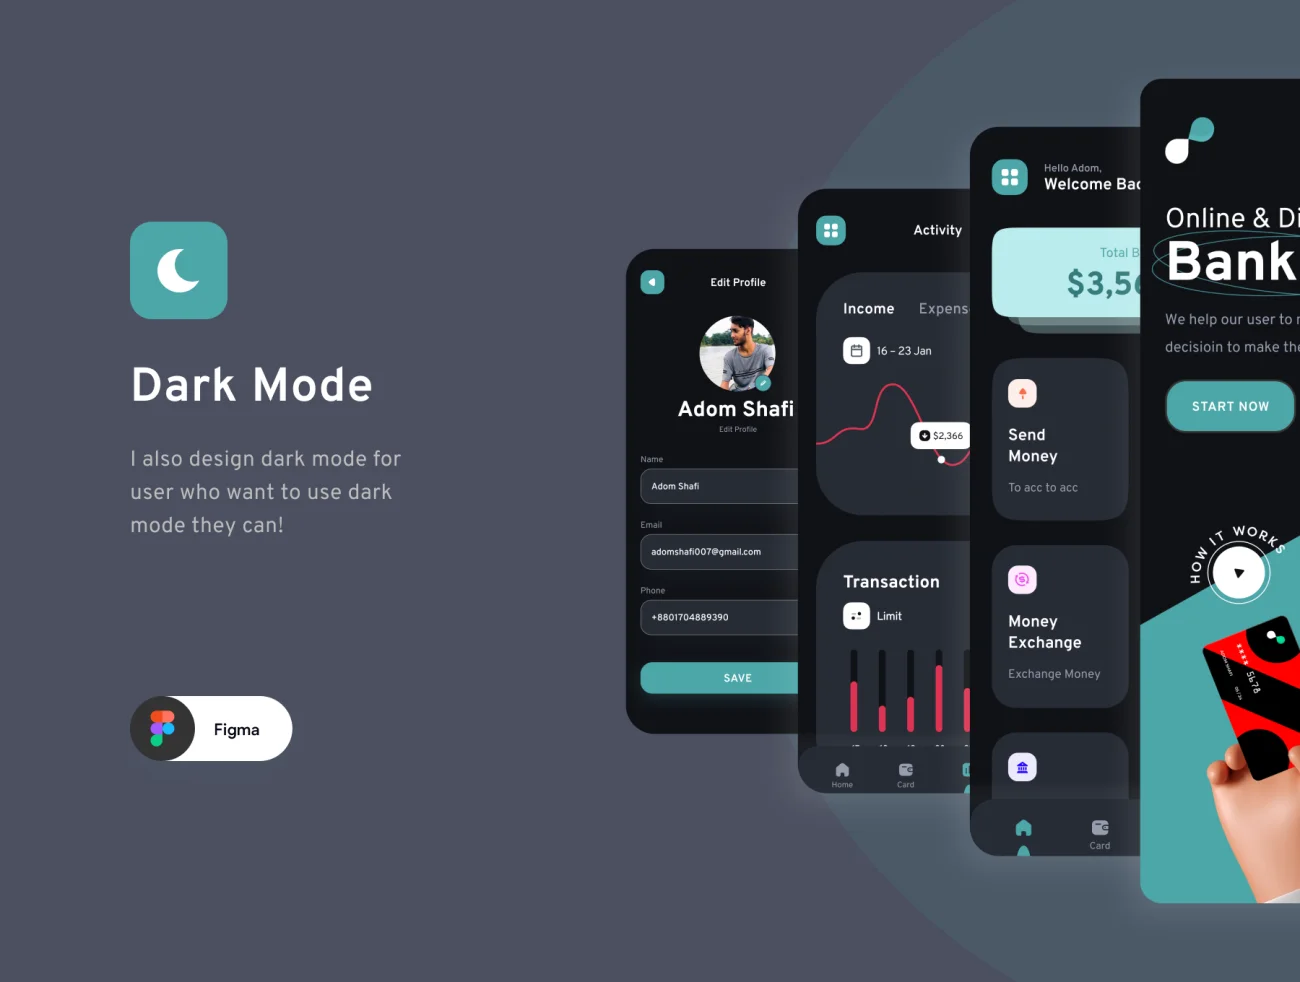 90屏手机银行金融理财电子钱包应用UI设计套件 Bankboo Mobile Banding App Kit插图5